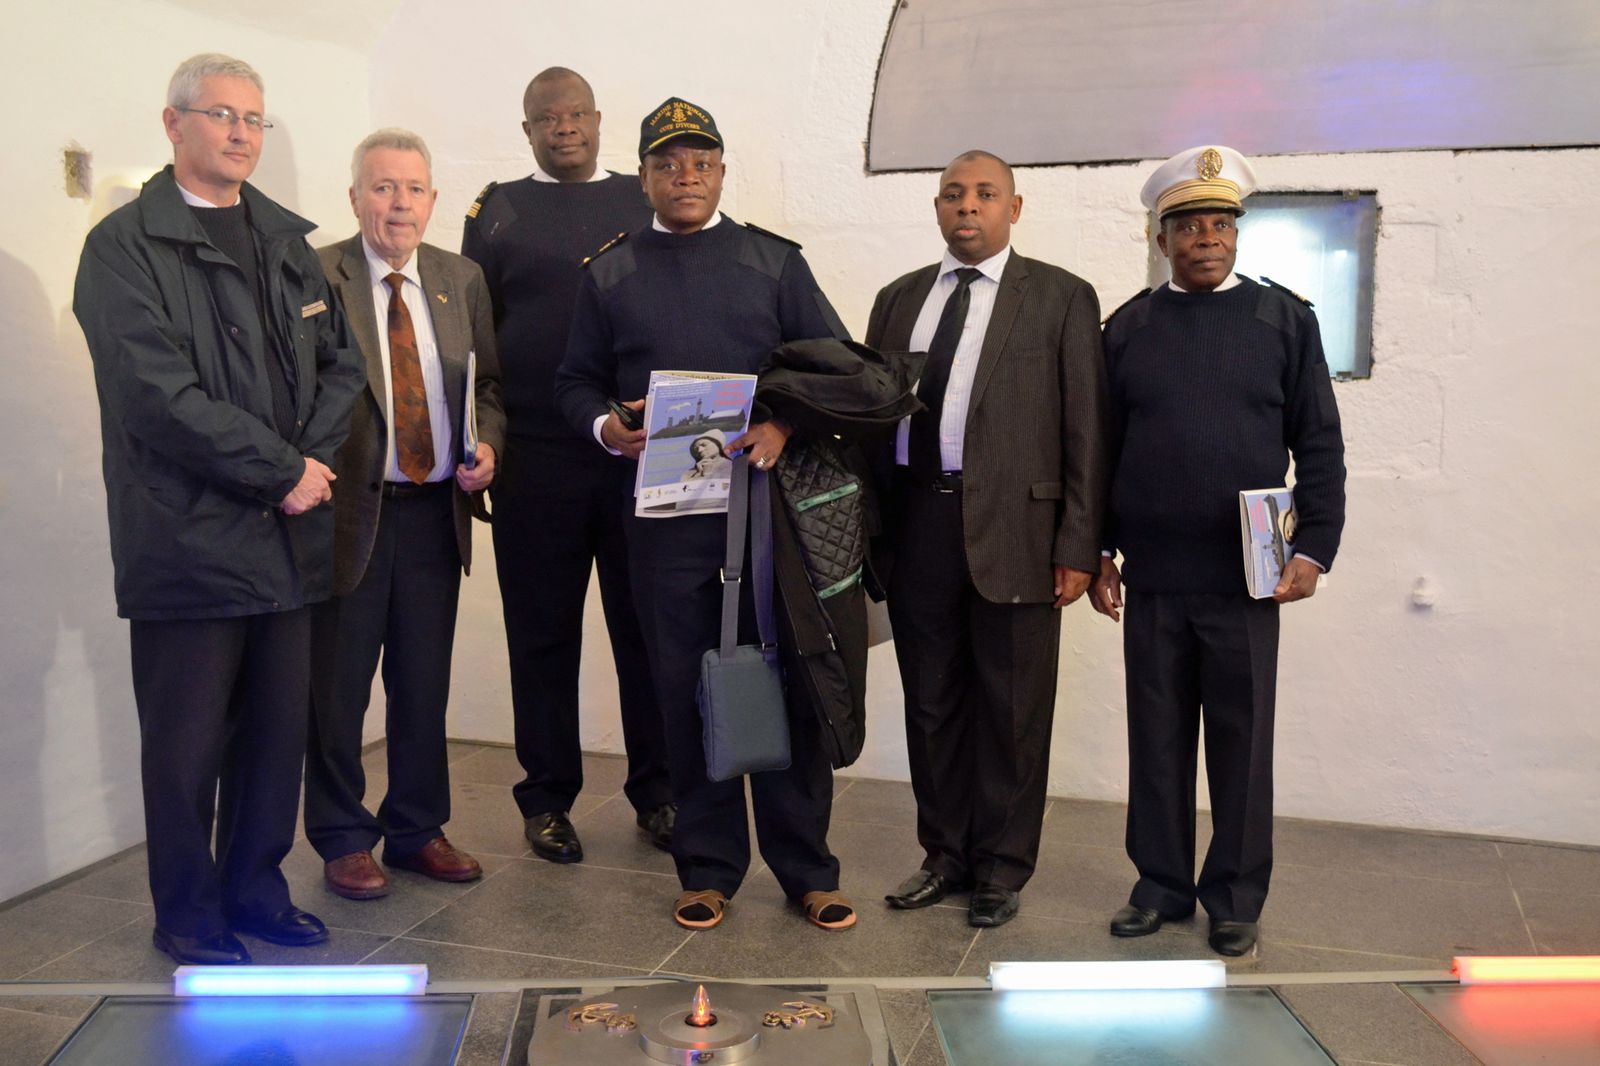 13 décembre 2013, des personnalités de Côte d'Ivoire, du Gabon et du Togo ont visité le Mémorial national des marins morts pour la France. Elles ont été accueillies et guidées par René Richard et Thadée Basiorek.
Photographies : Thadée Bas